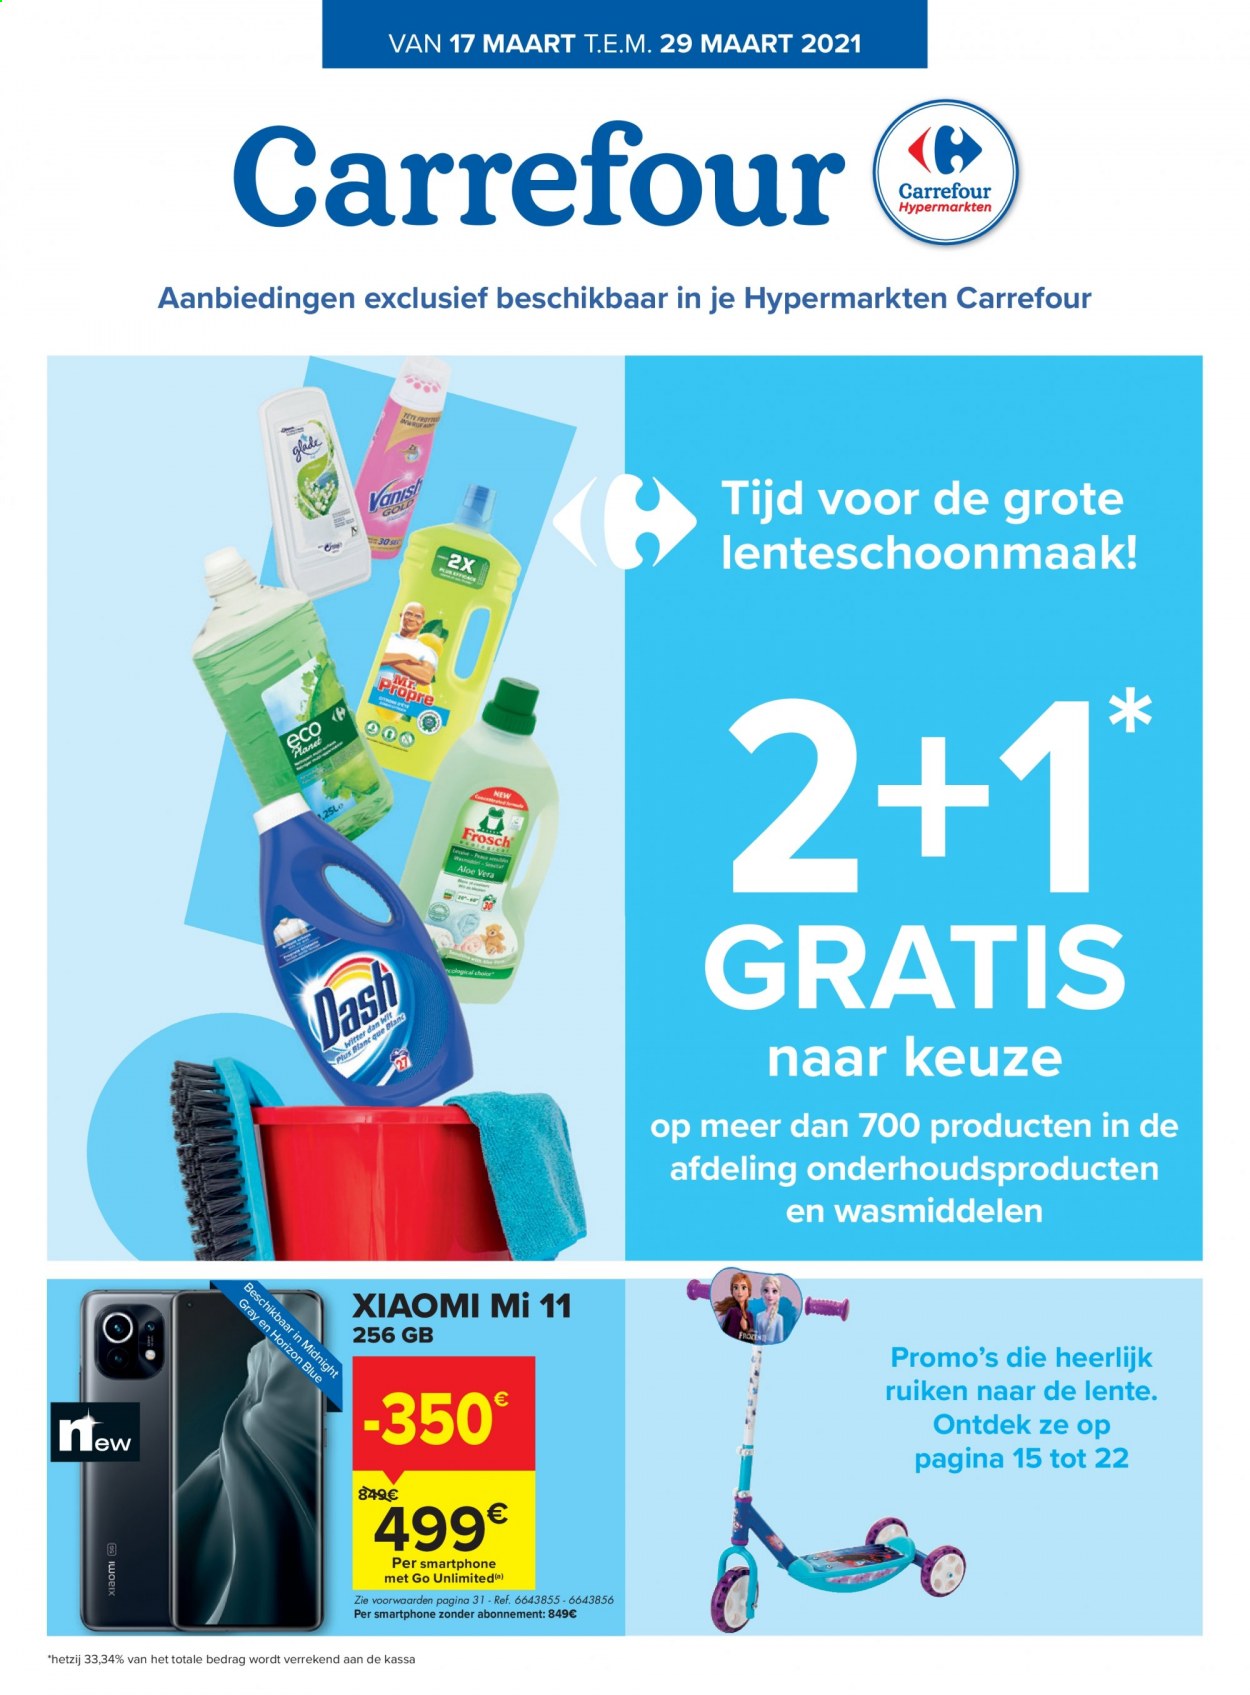 thumbnail - Carrefour hypermarkt-aanbieding - 17/03/2021 - 29/03/2021 -  producten in de aanbieding - smartphone, Vanish, Frosch, aloe vera. Pagina 1.